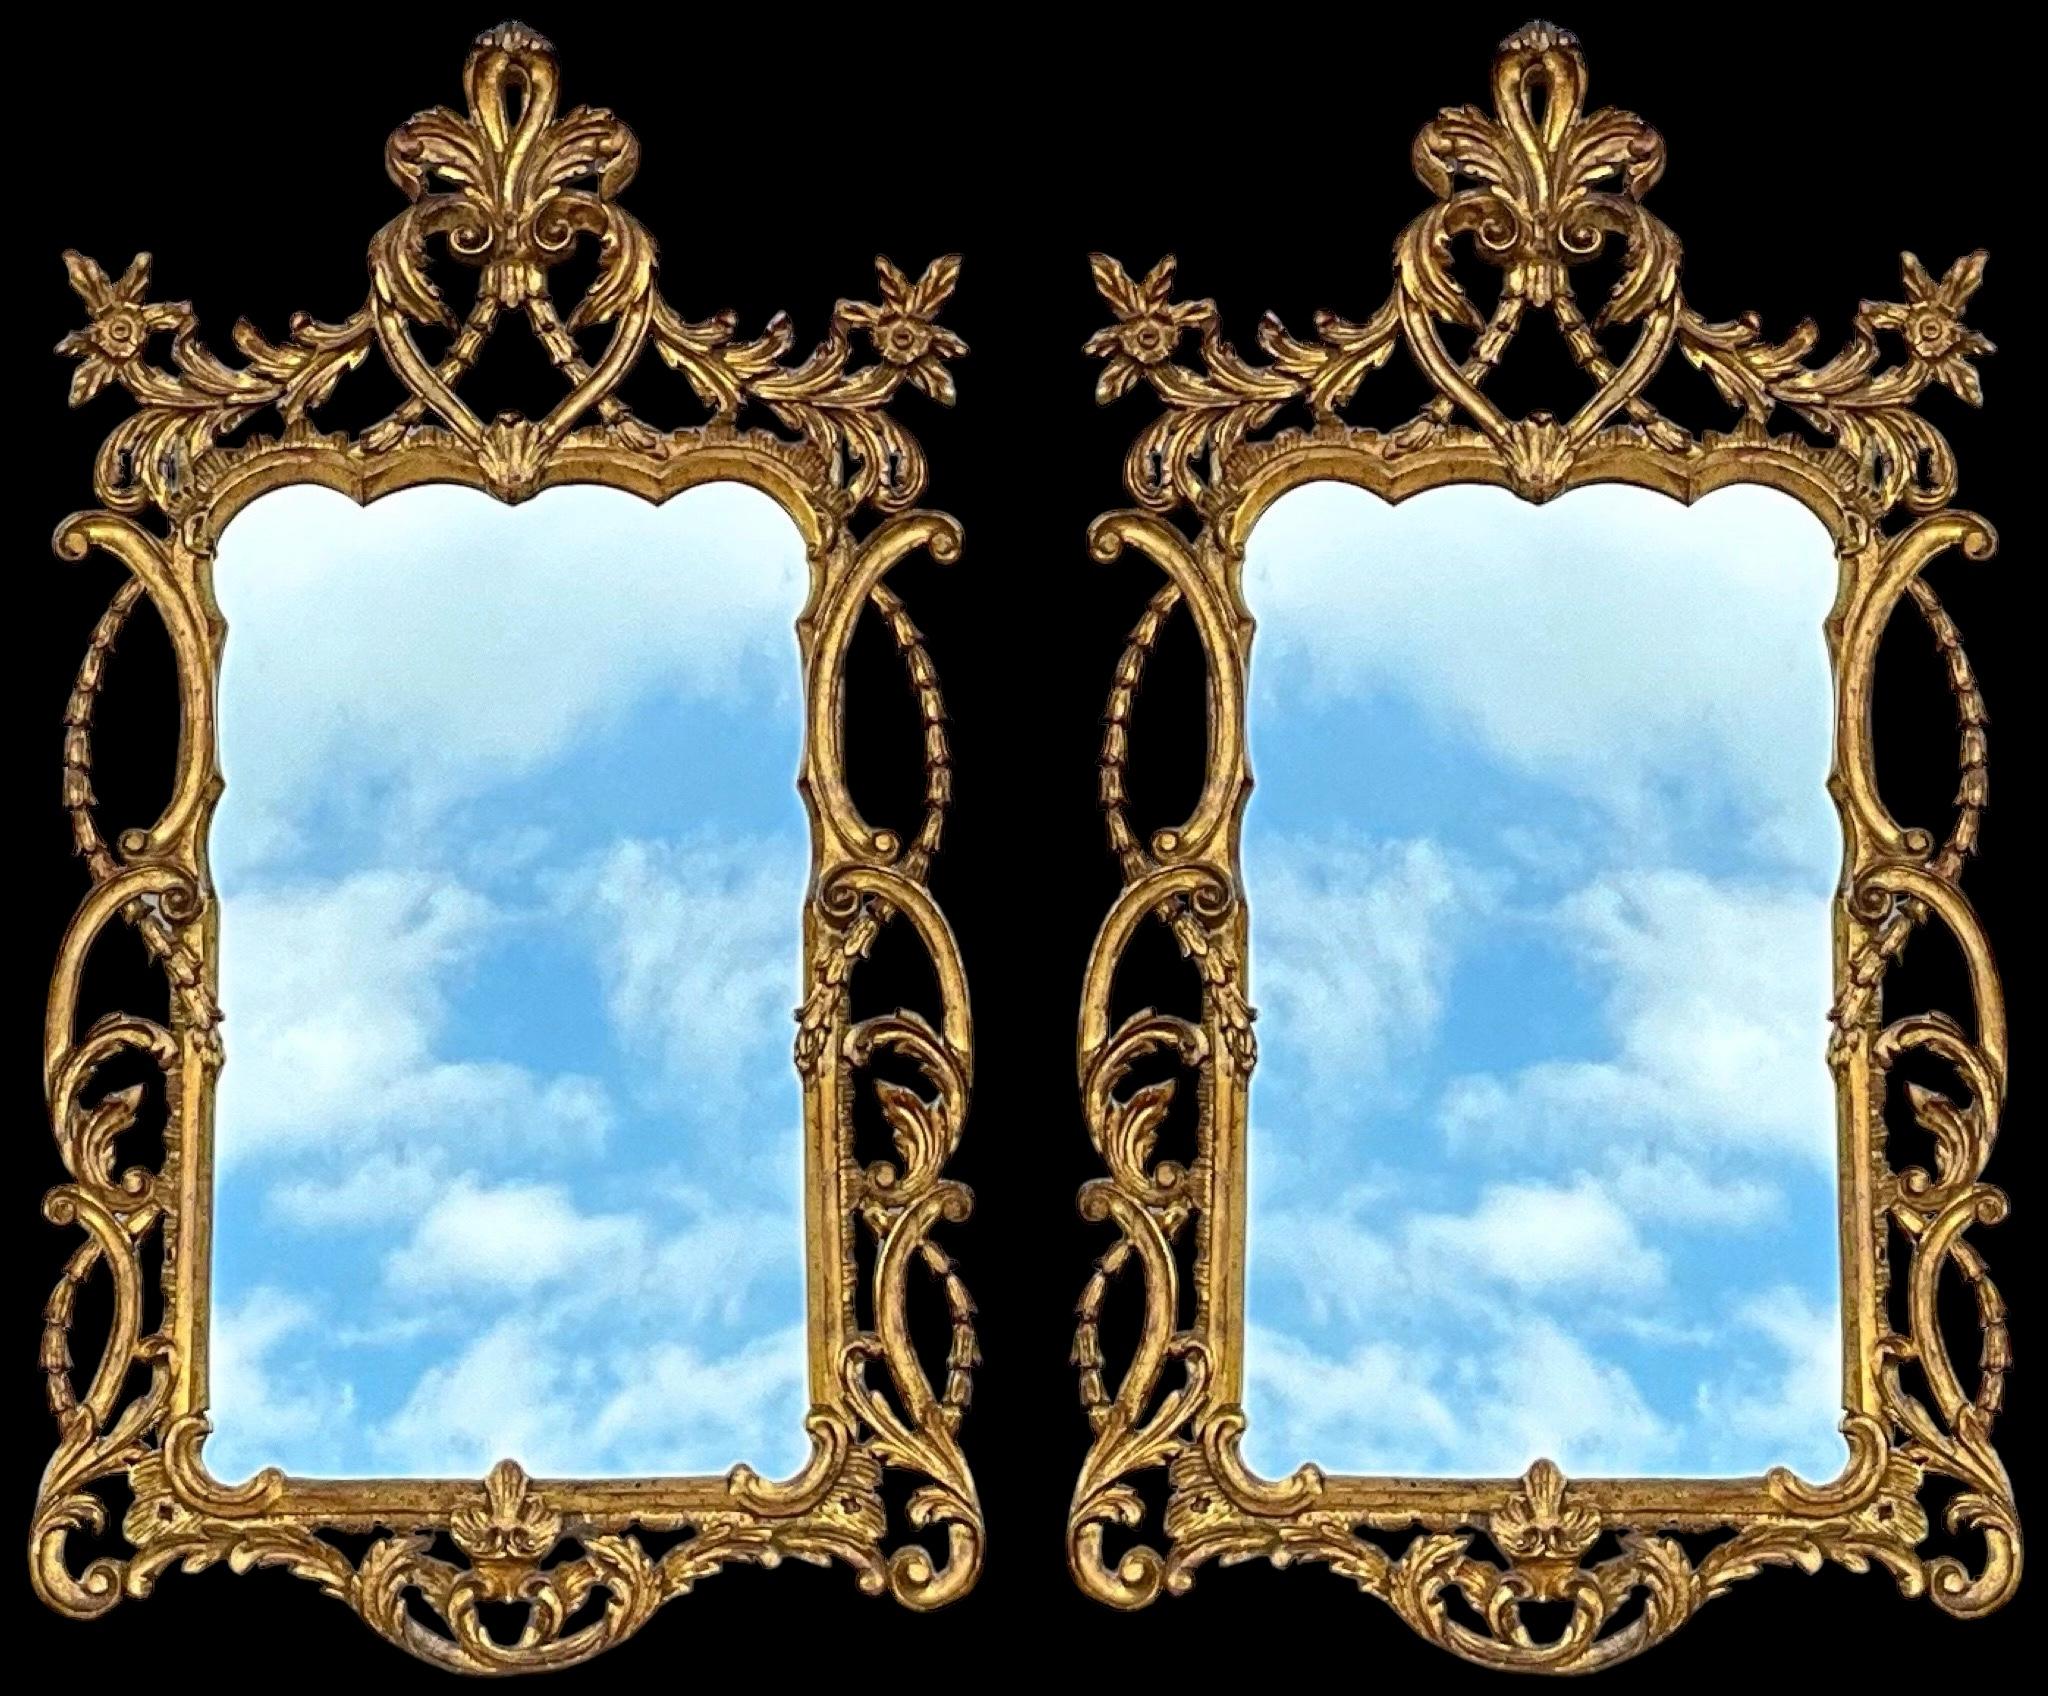 Il s'agit d'une belle paire de miroirs italiens en bois sculpté et doré datant du milieu du 20e siècle. Ils présentent un style français avec les décorations d'angle florales et le fronton à fleur de lys modifié. Ils ne portent aucune marque et sont